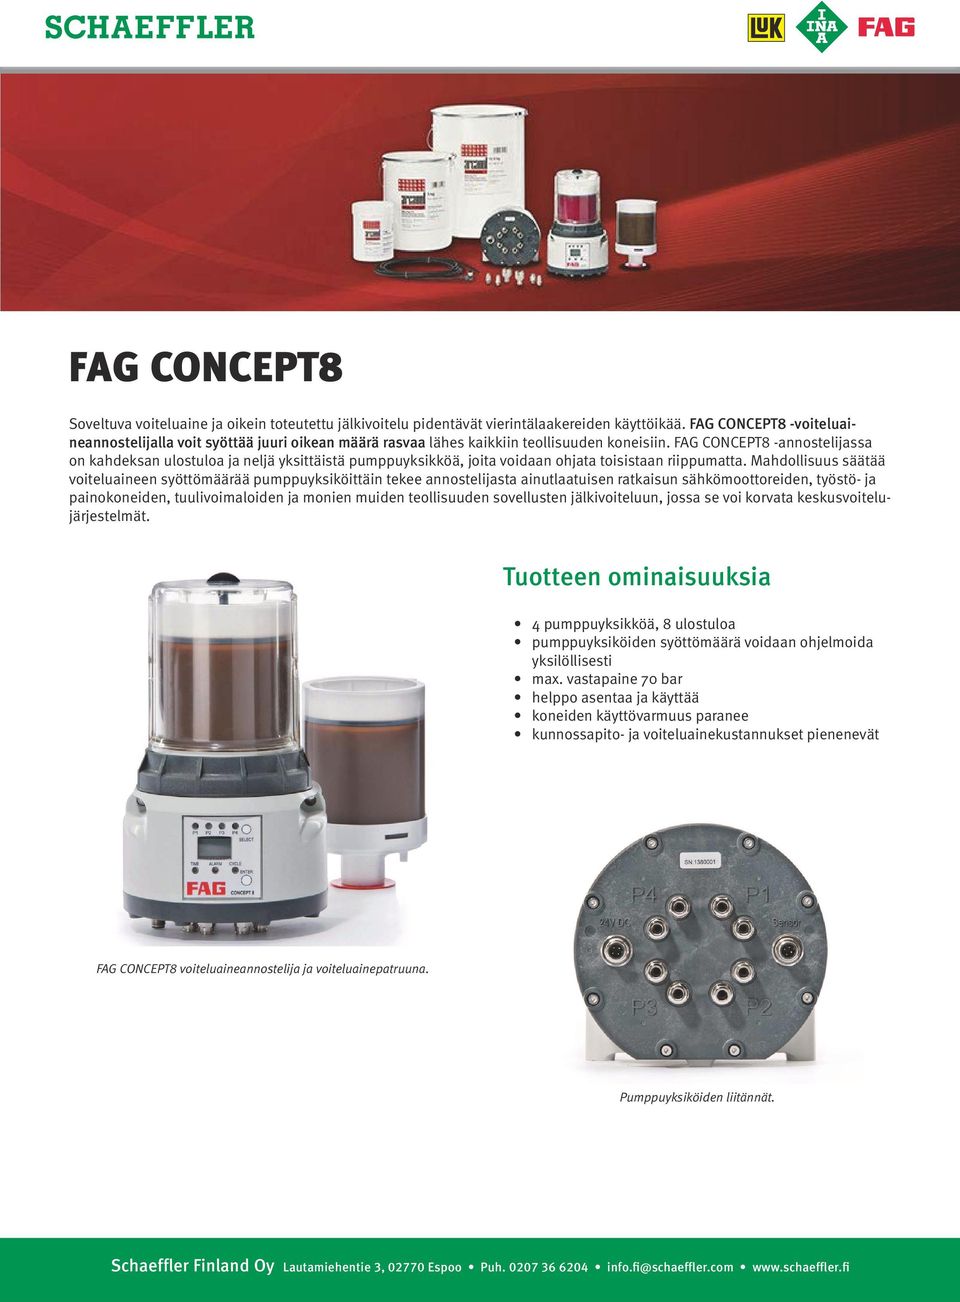 FAG CONCEPT8 -annostelijassa on kahdeksan ulostuloa ja neljä yksittäistä pumppuyksikköä, joita voidaan ohjata toisistaan riippumatta.